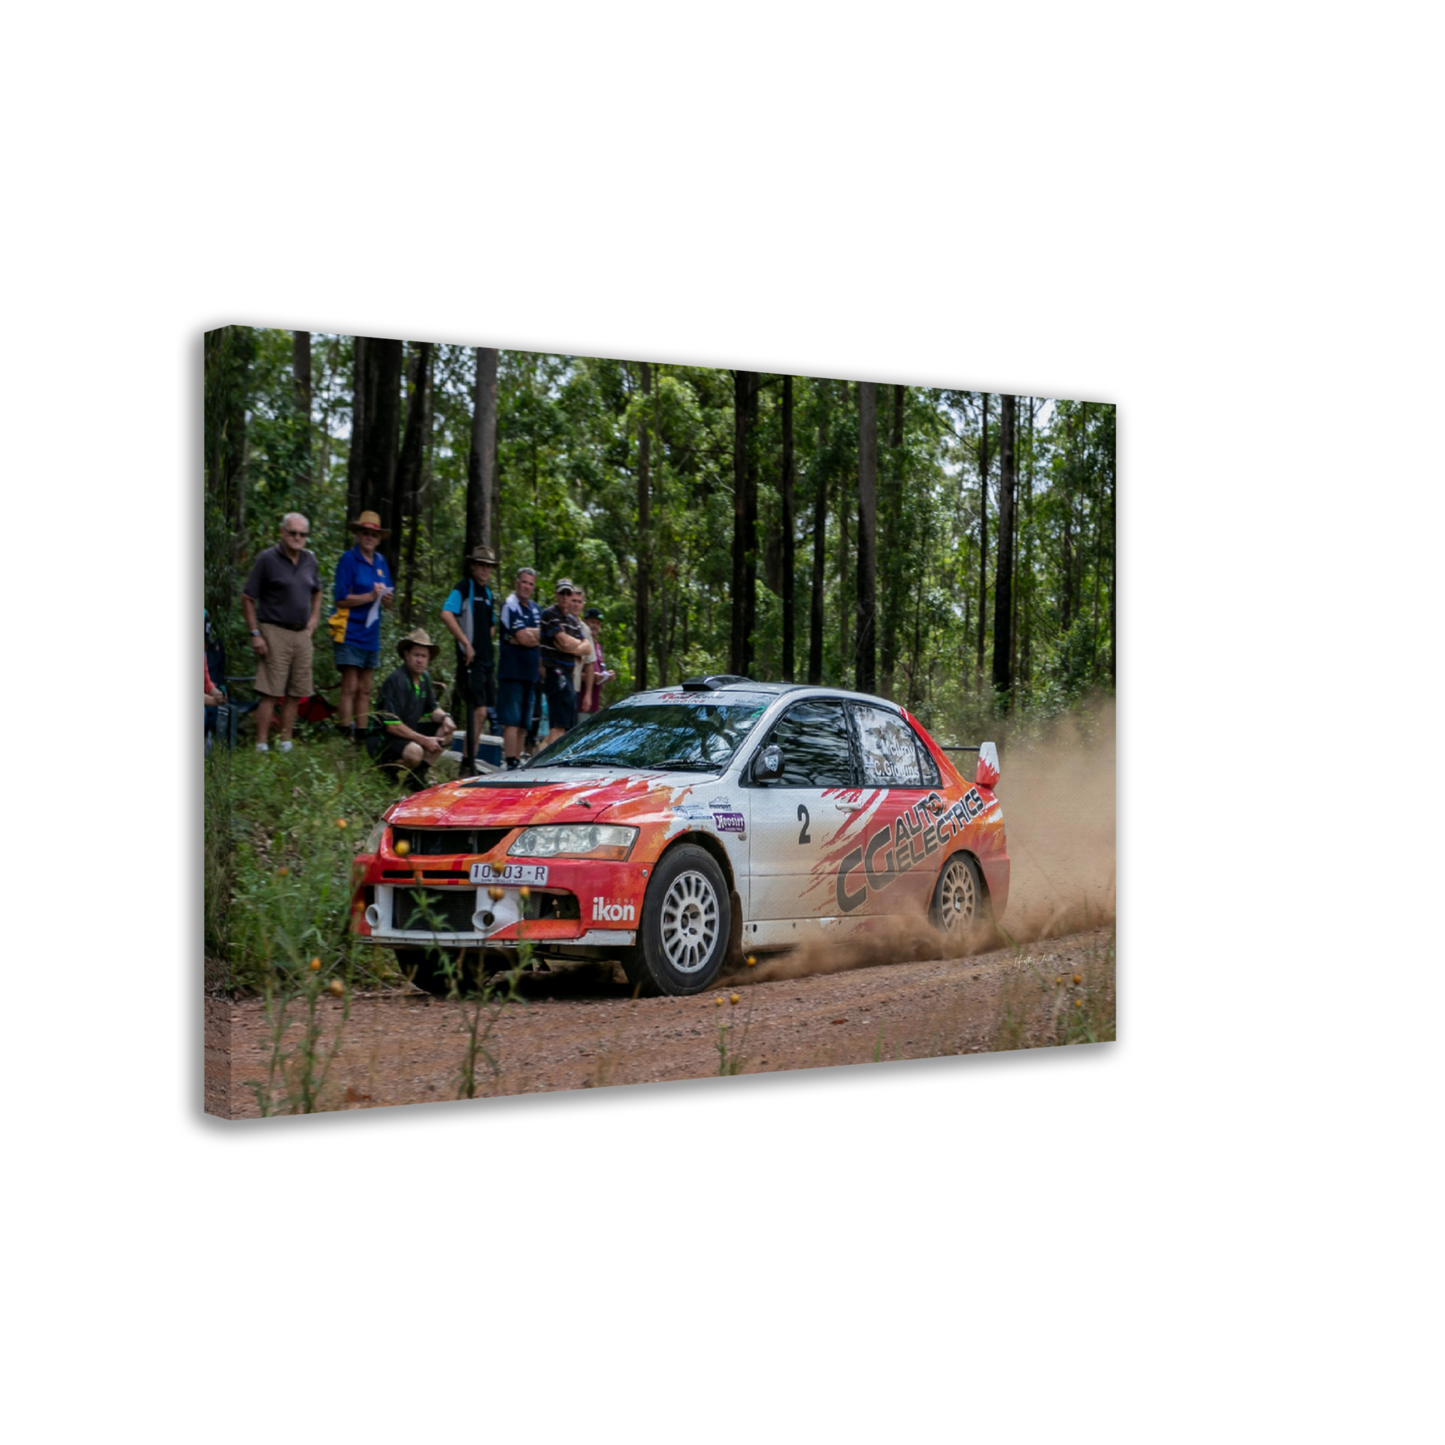 Amsag Taree Rally - Car 2 Chris Giddins / Tara McIlroy